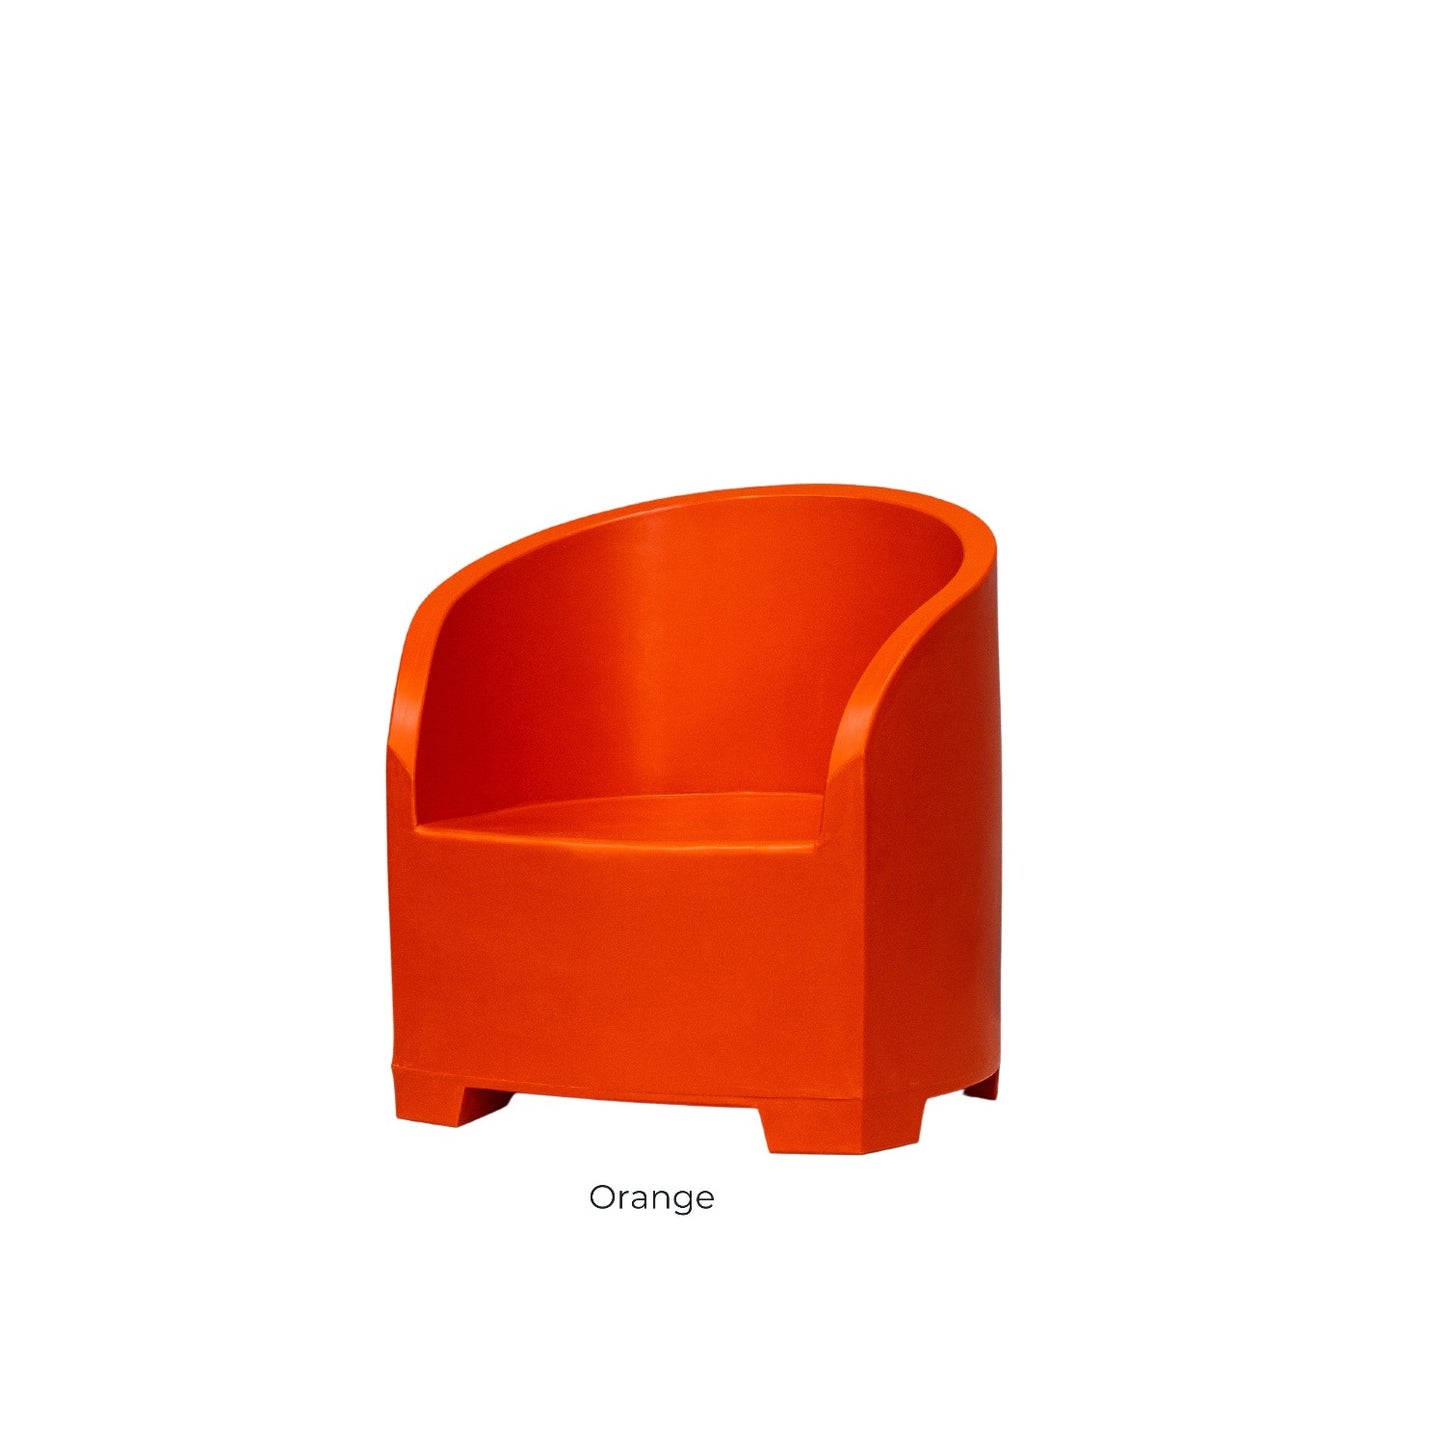 Orange outdoor chair by Modscene.